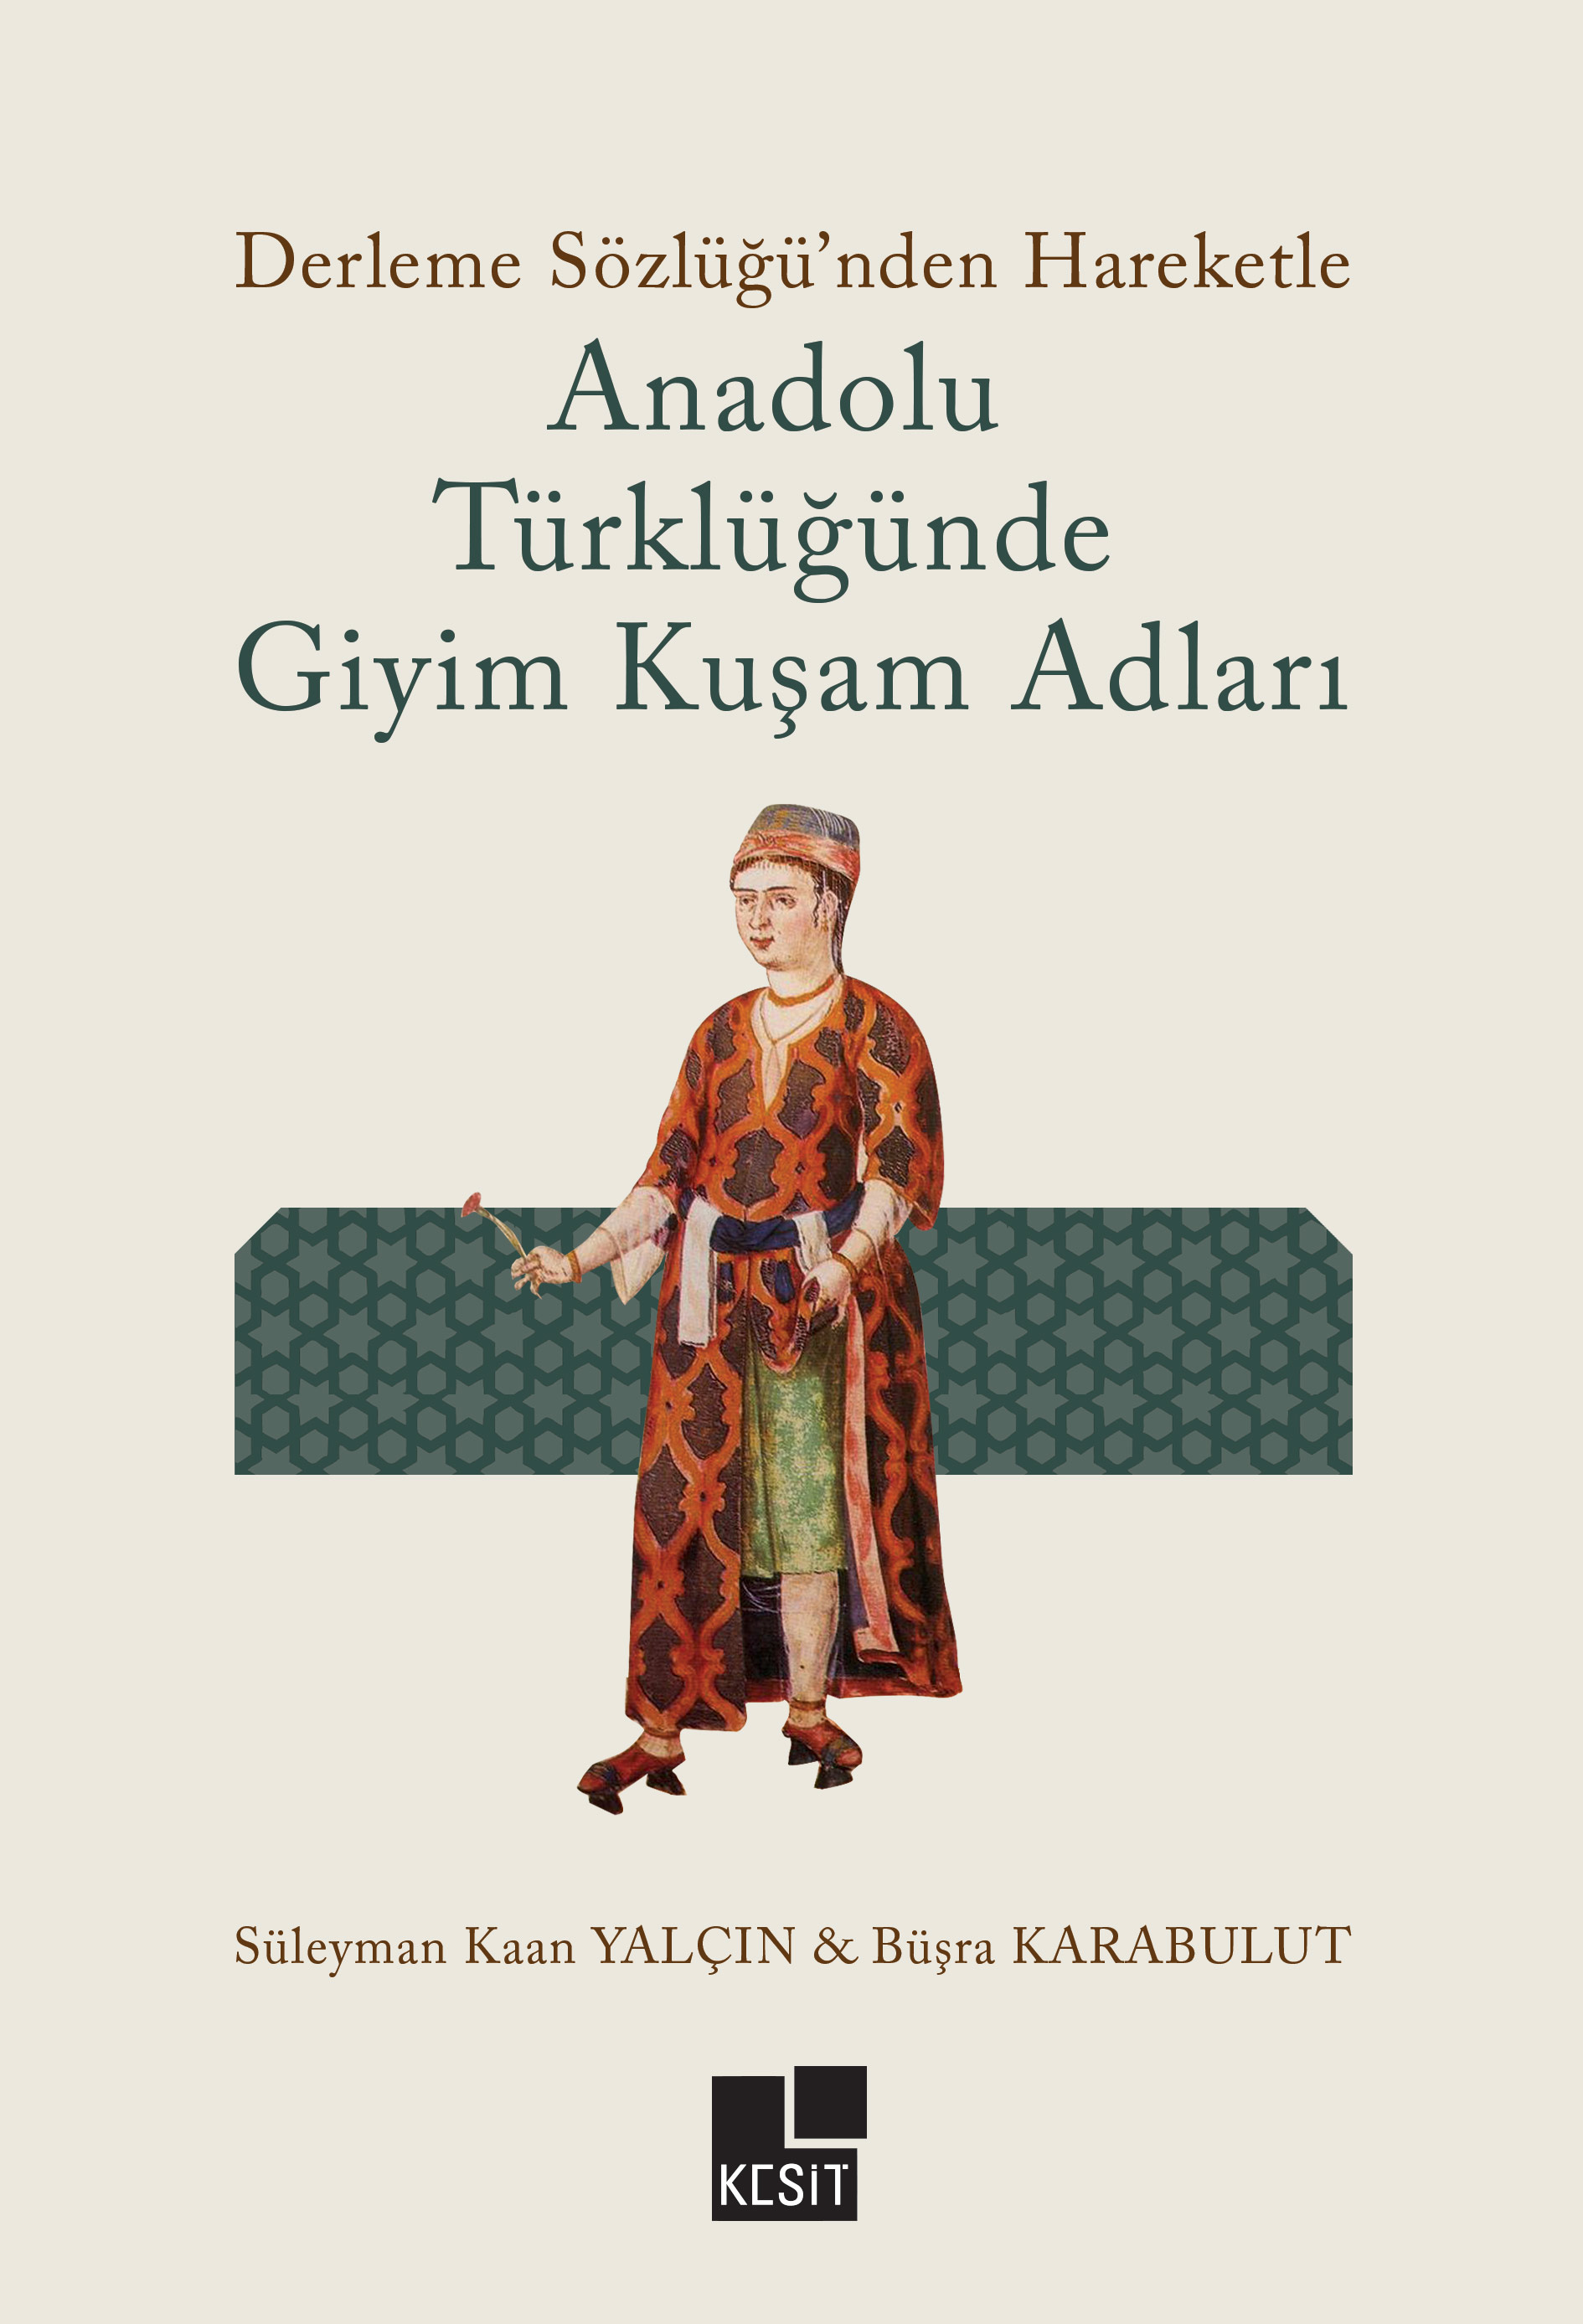 Derleme Sözlüğünden Hareketle Anadolu Türklüğünde Giyim Kuşam Adları